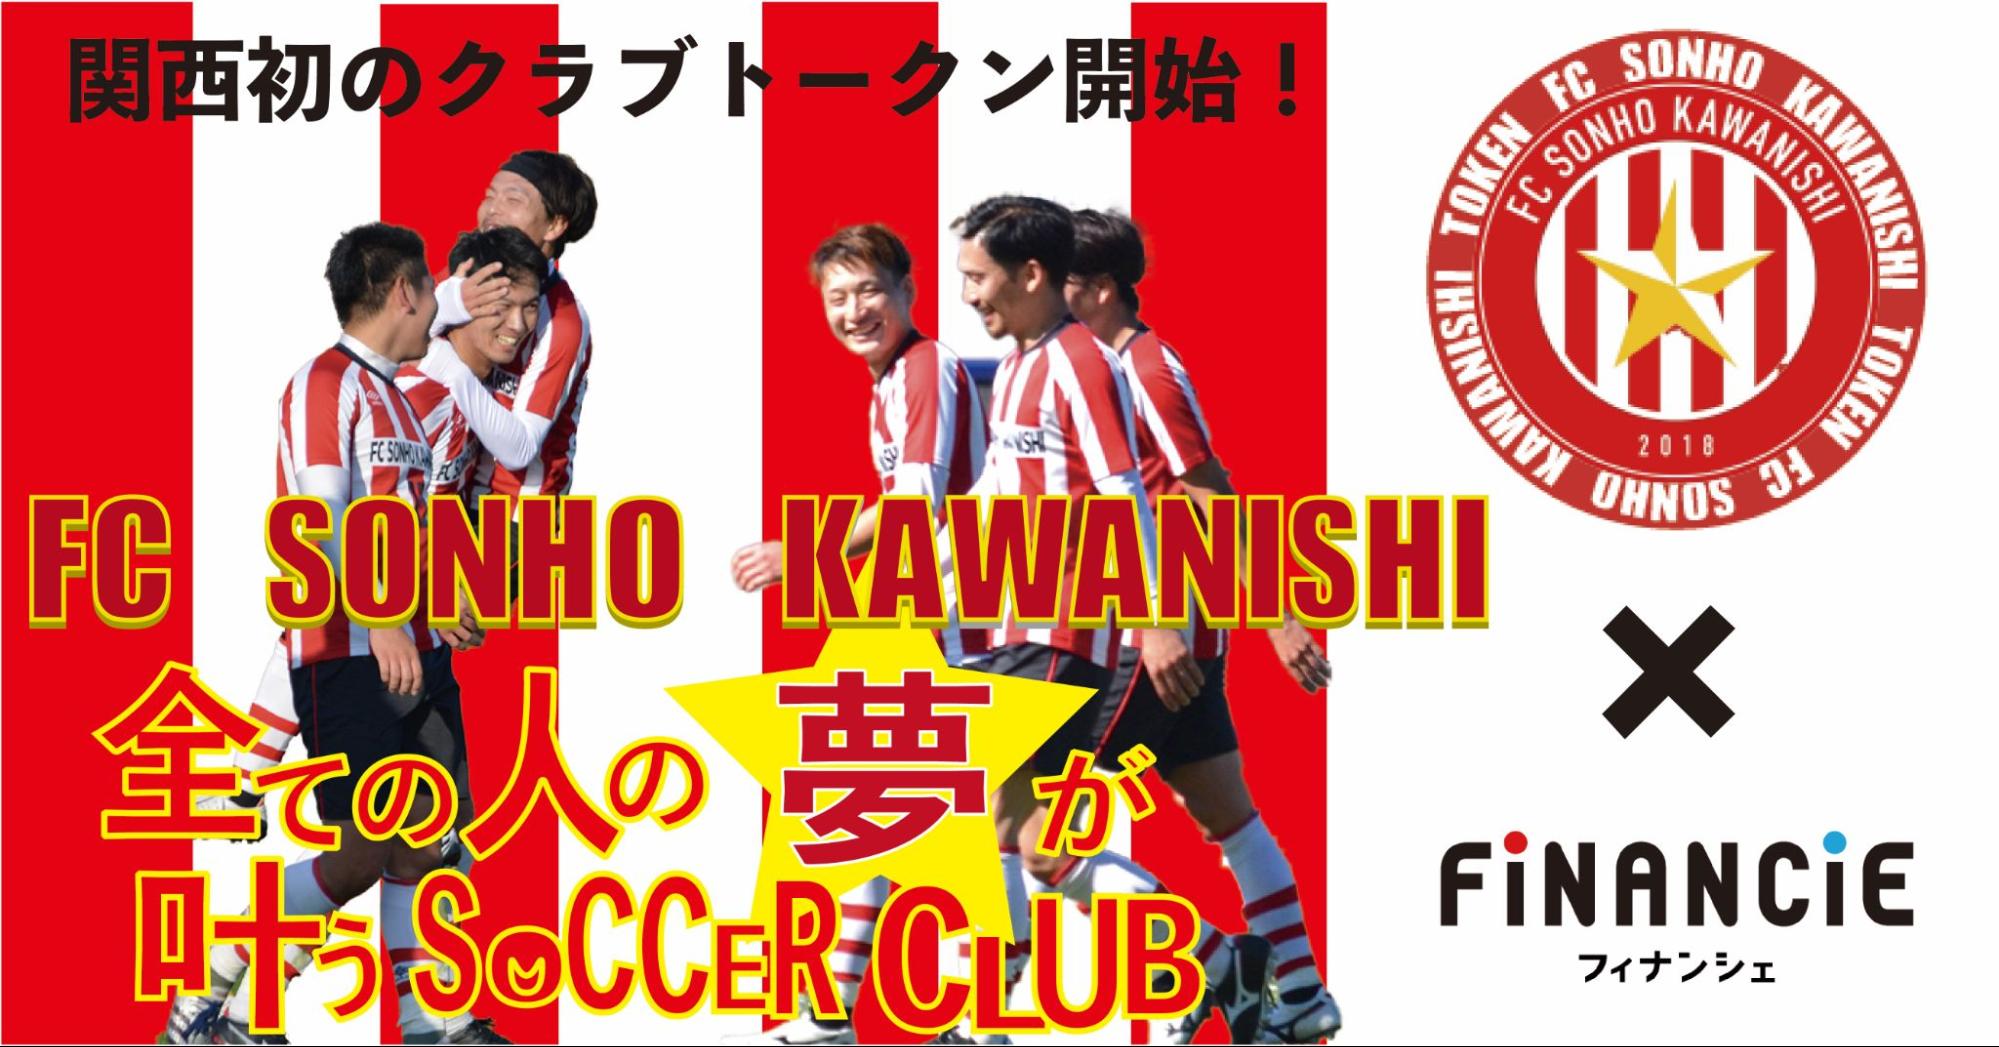 兵庫県北摂トップリーグに所属するサッカークラブ Fc Sonho川西 がクラブトークンを新規発行 販売開始 株式会社フィナンシェのプレスリリース